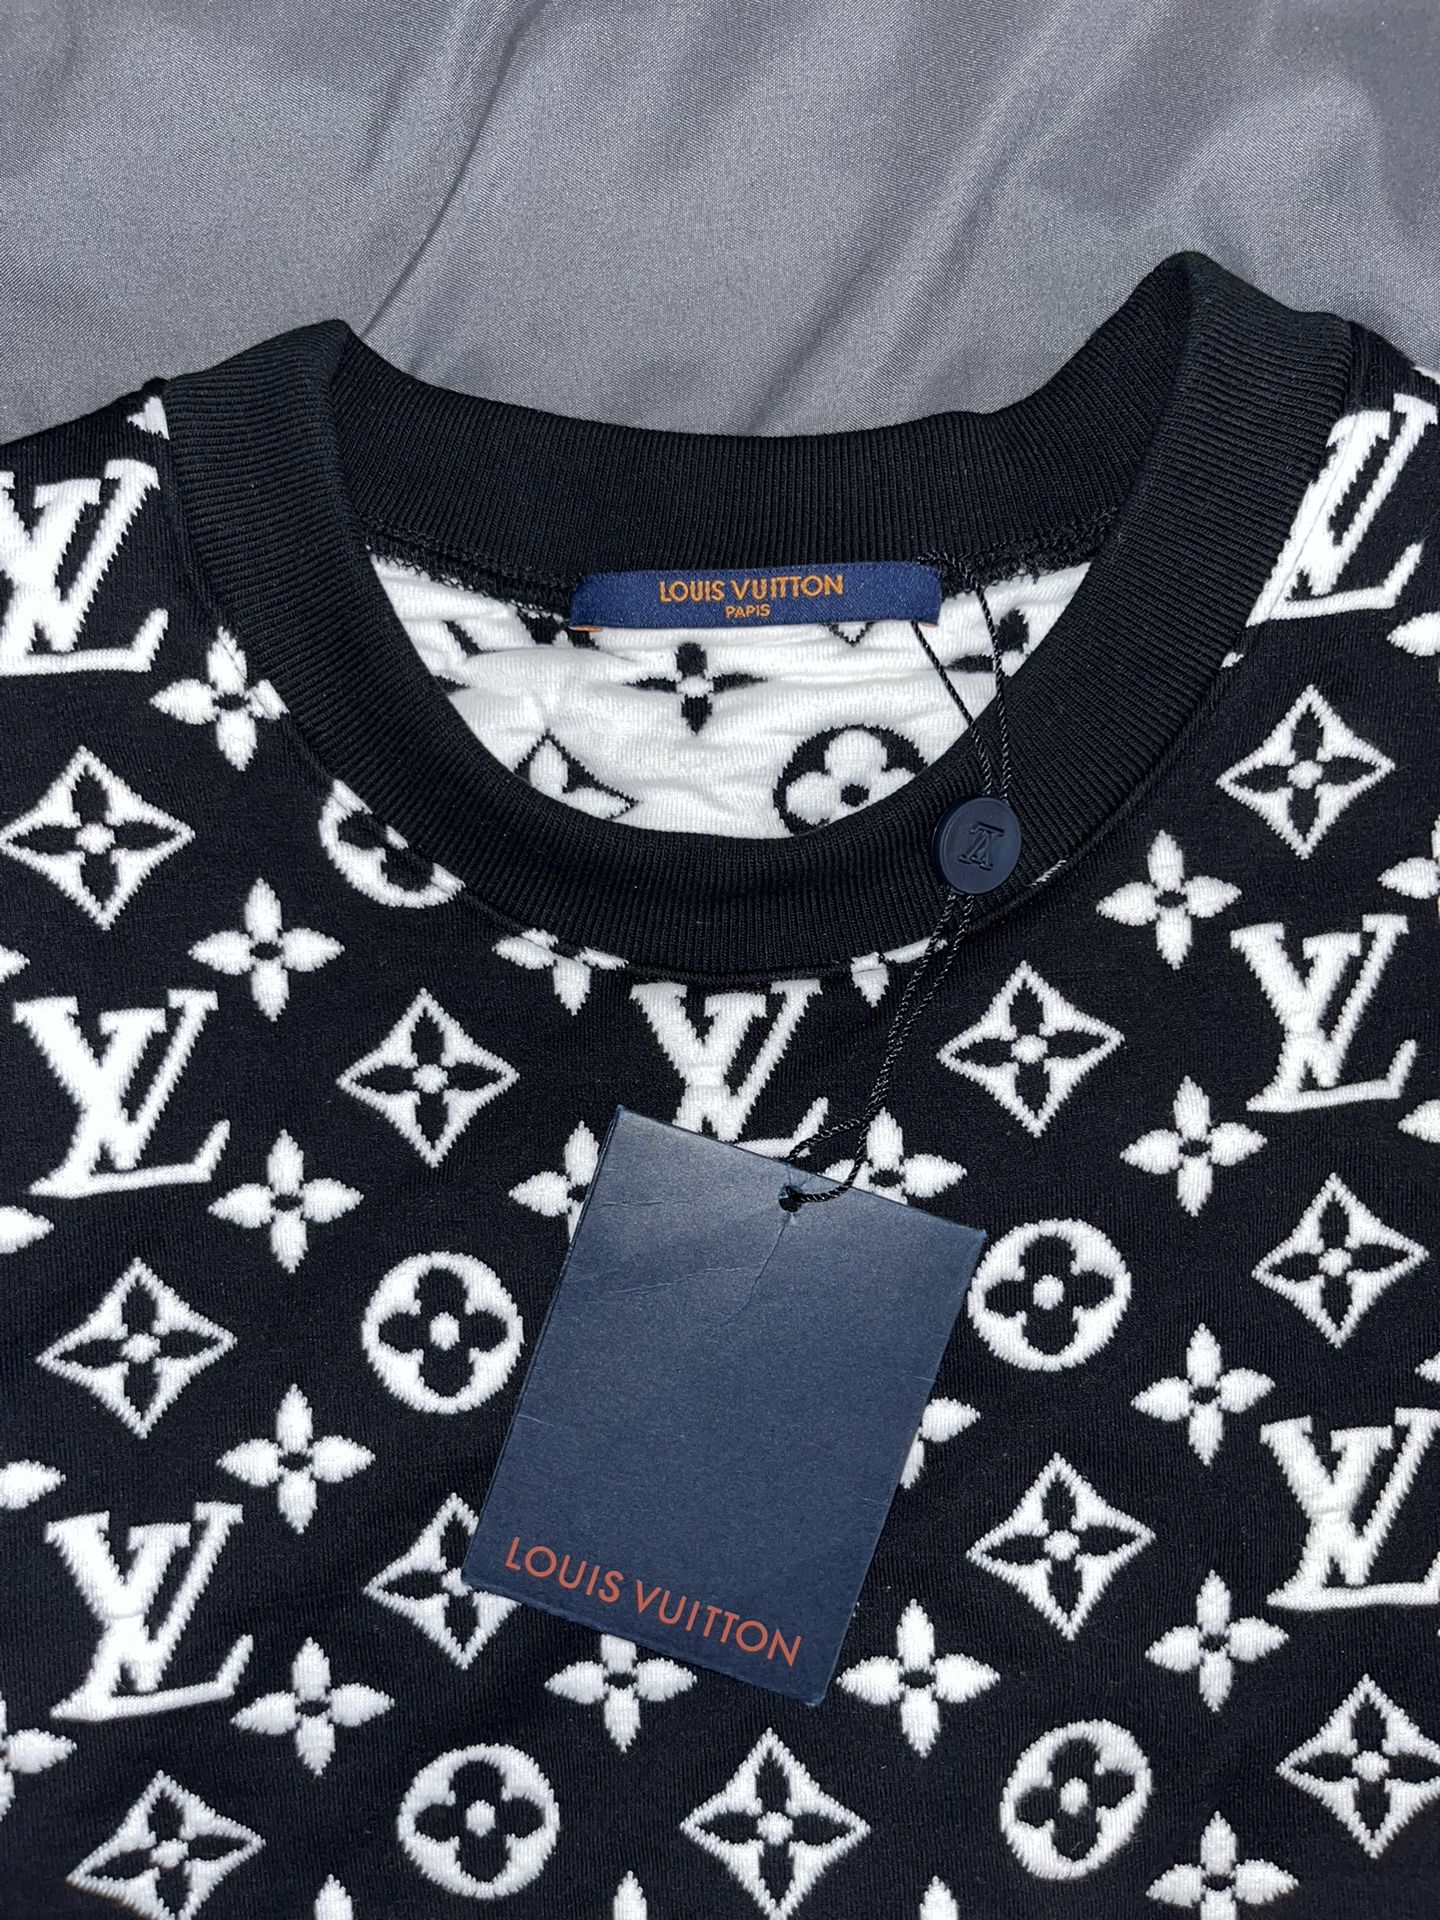 Louis Vuitton Monogram Jacquard Crew Neck – Haiendo Shop